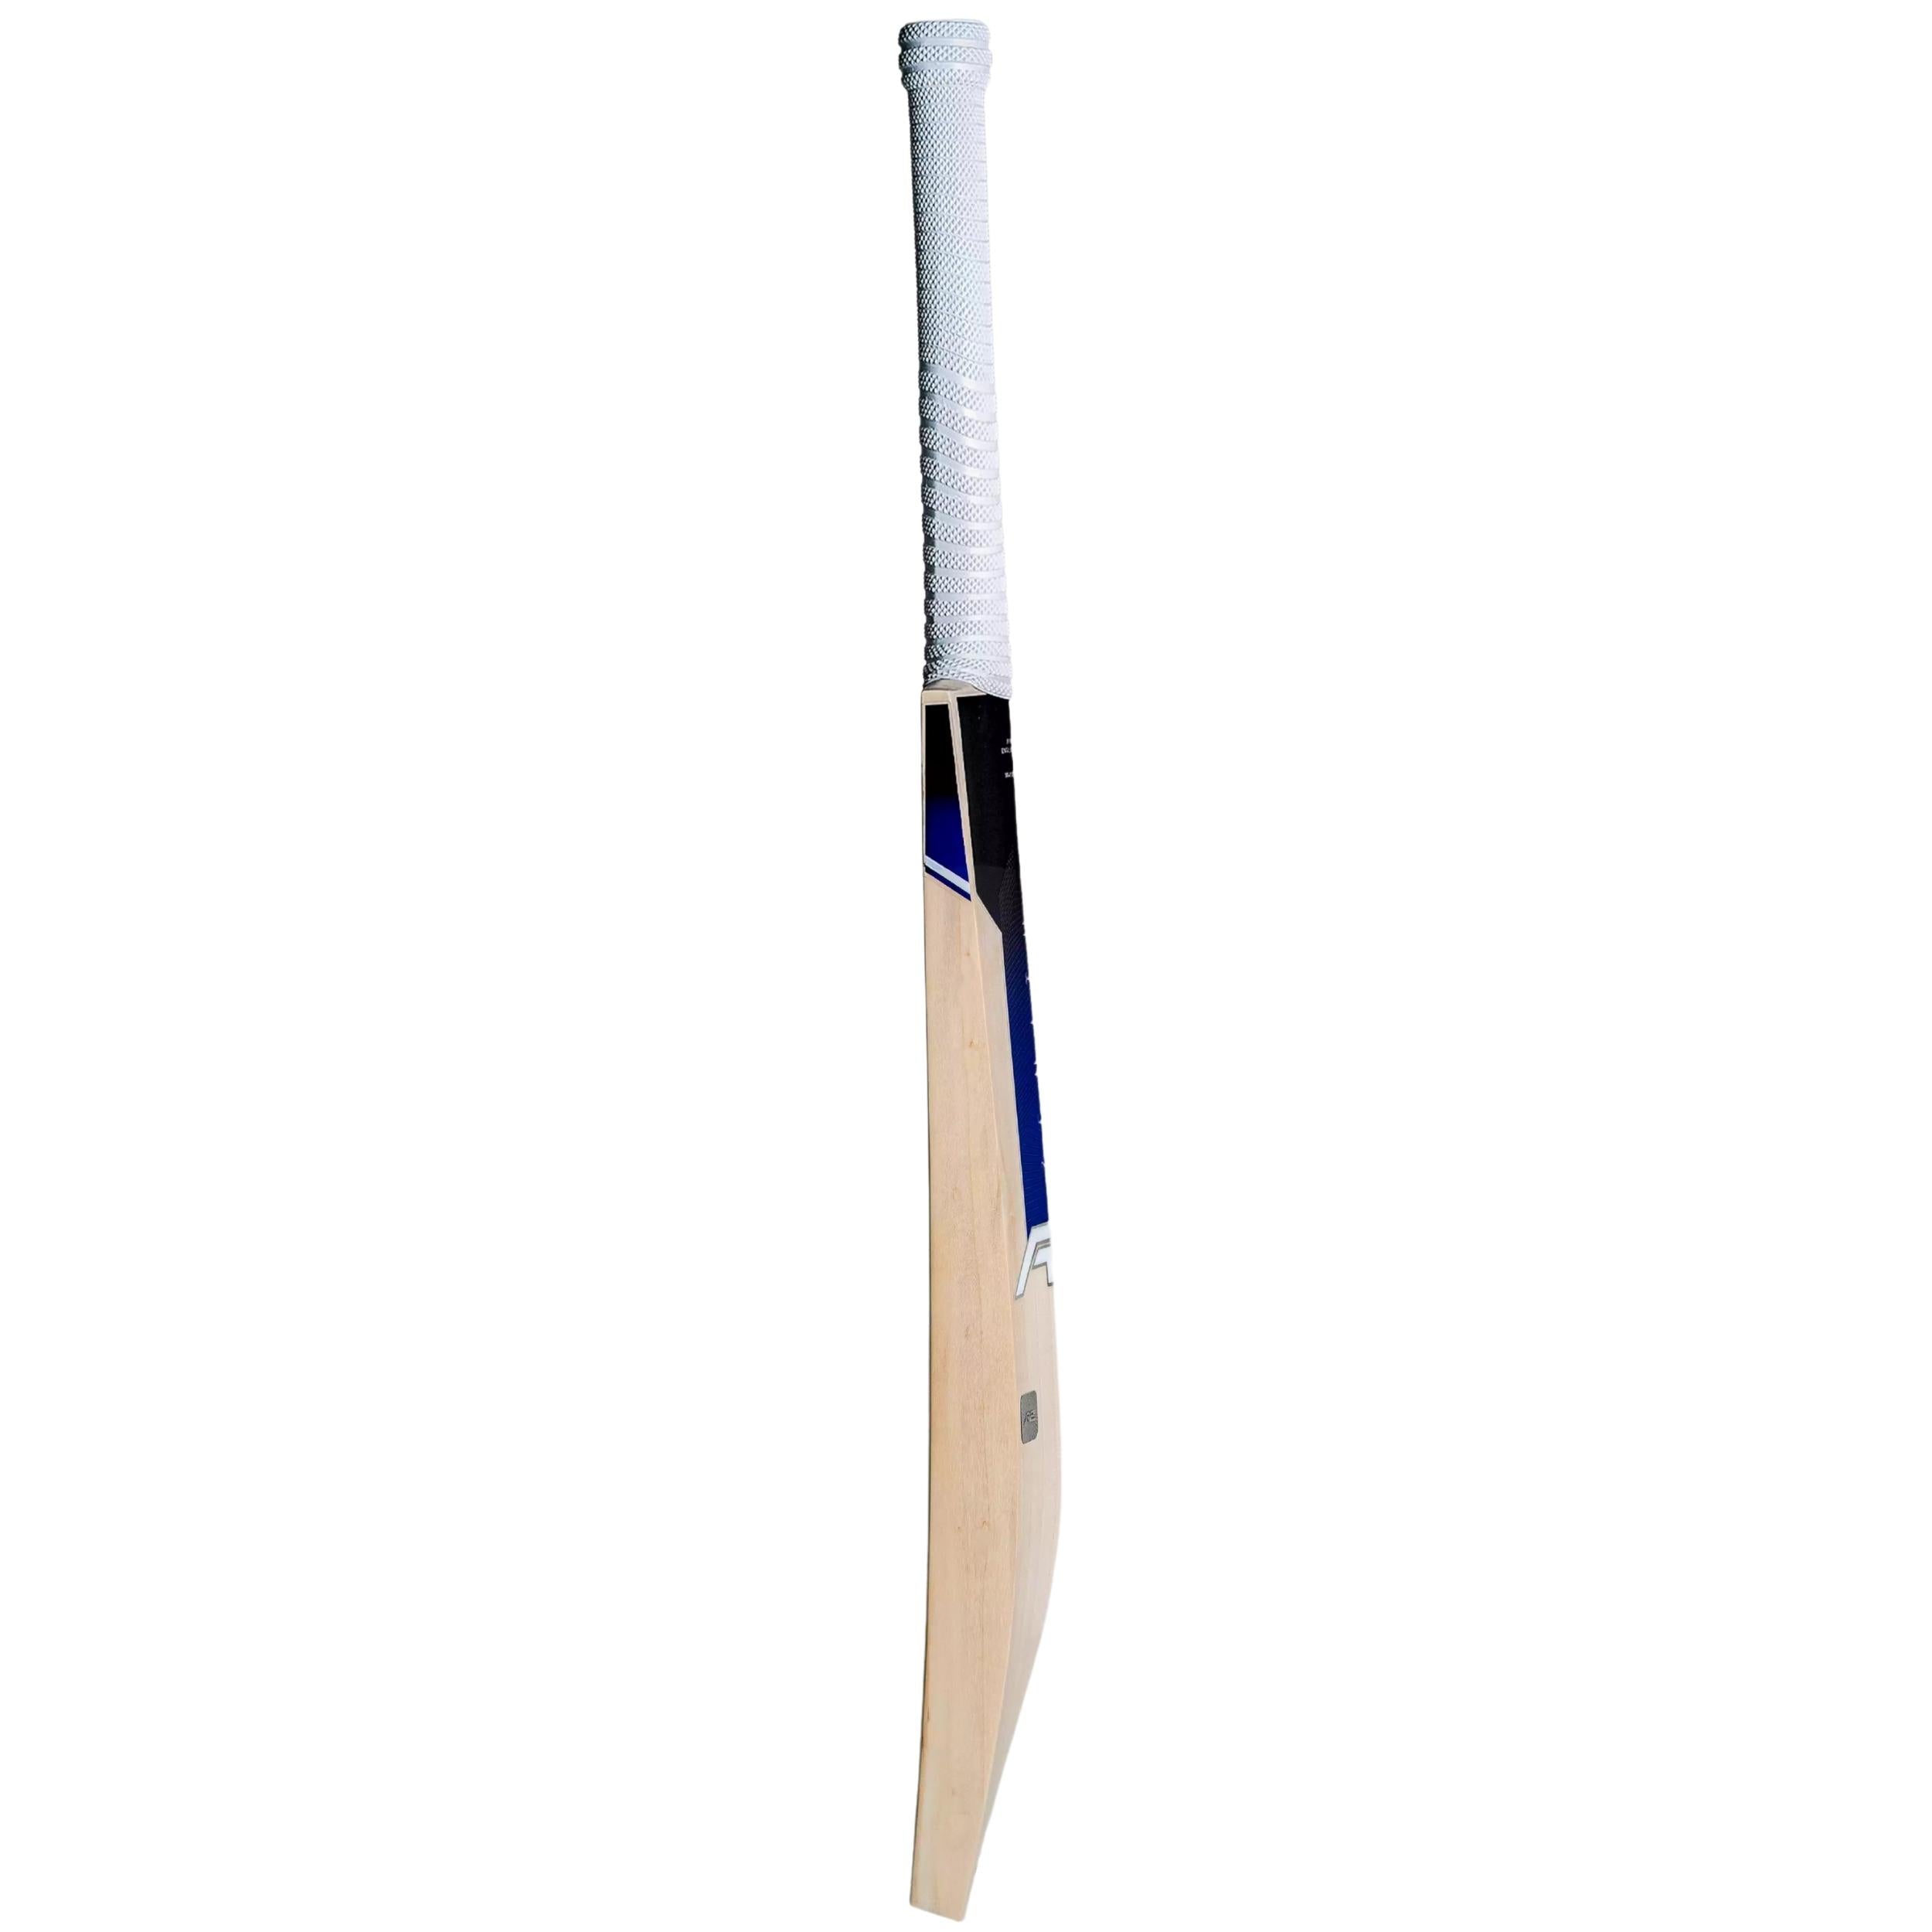 A2 Zenith Grade-1 English Willow Cricket Bat